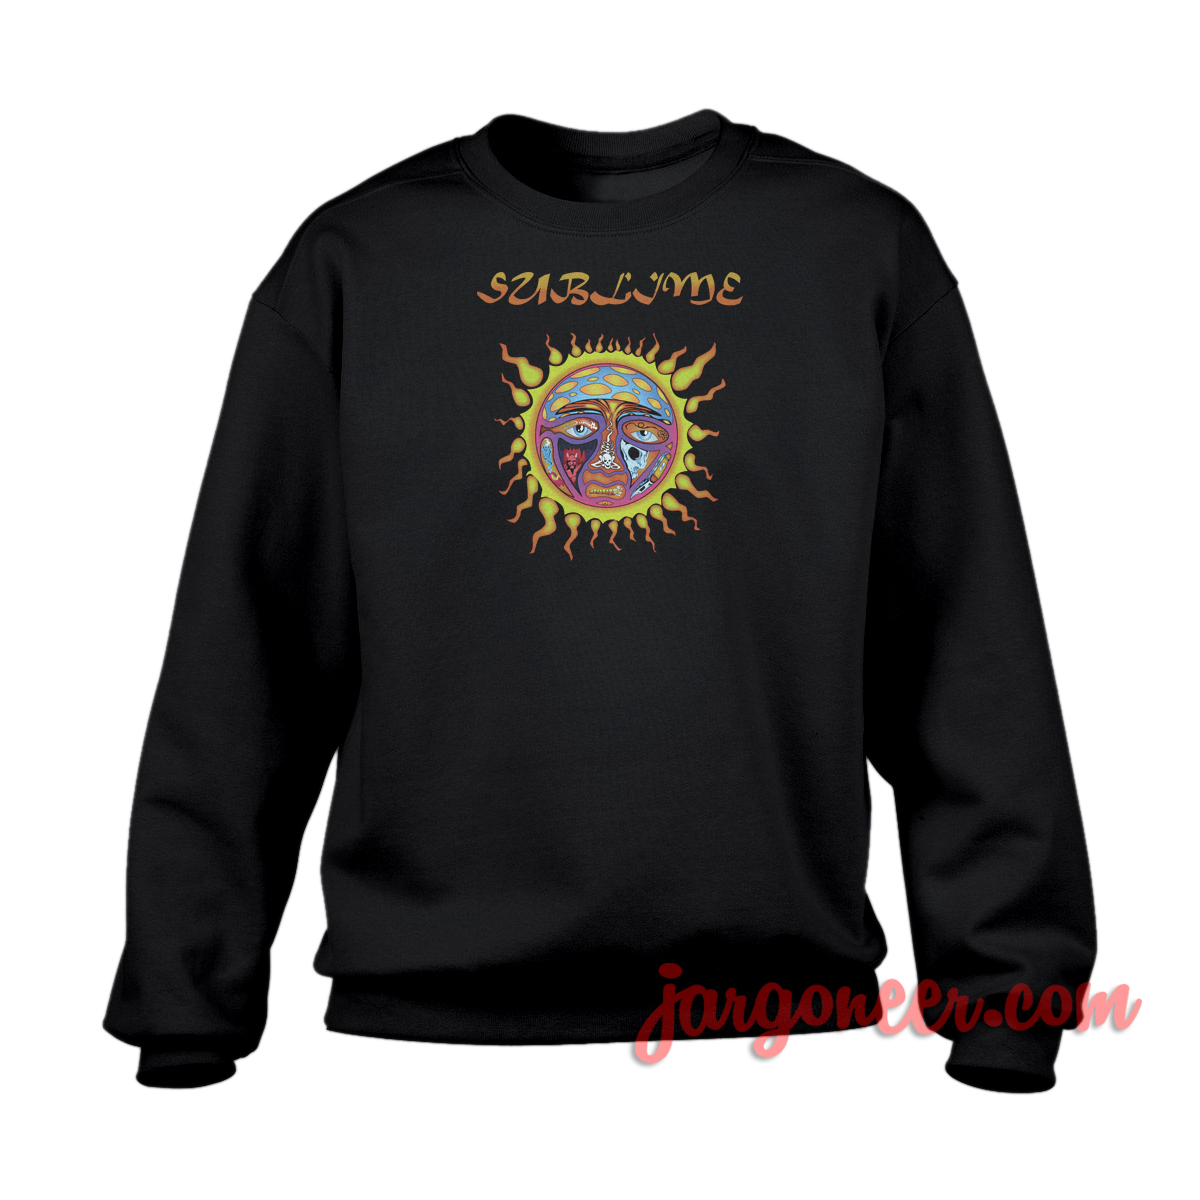 Sublime Sun Logo 1 - Shop Unique Graphic Cool Shirt Designs